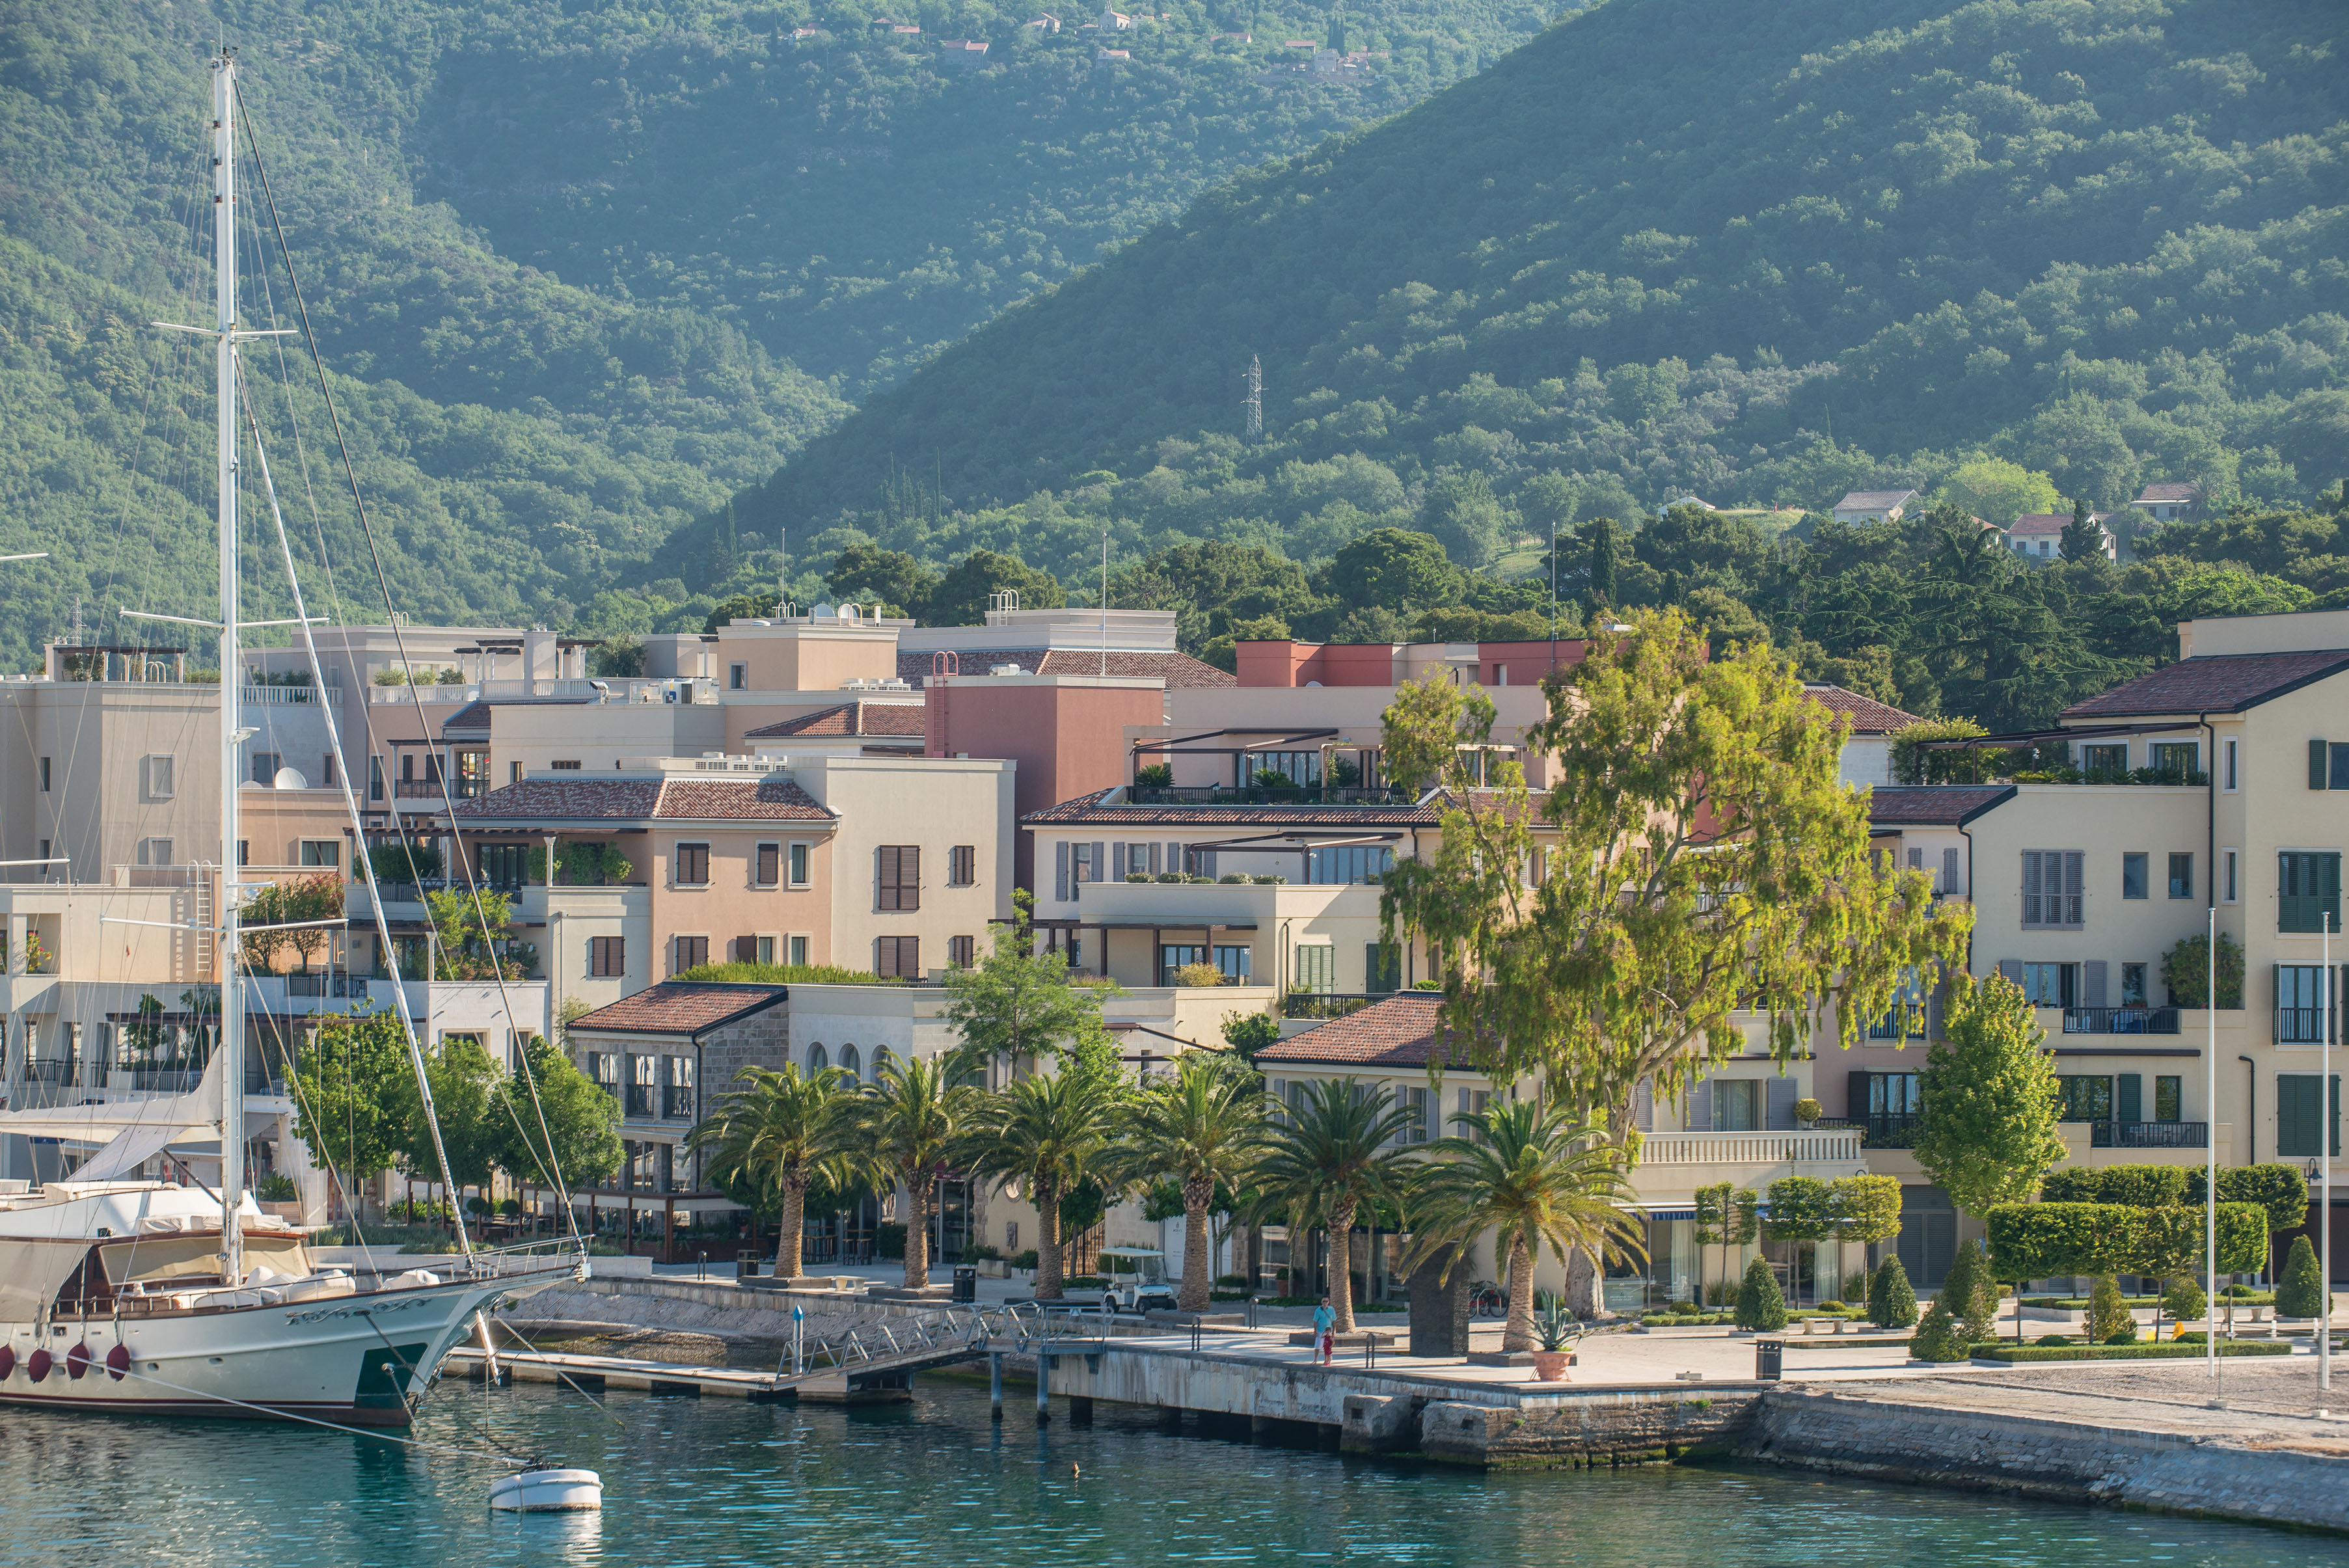  Estate in Montenegro: la migliore destinazione nautica dell’Adriatico